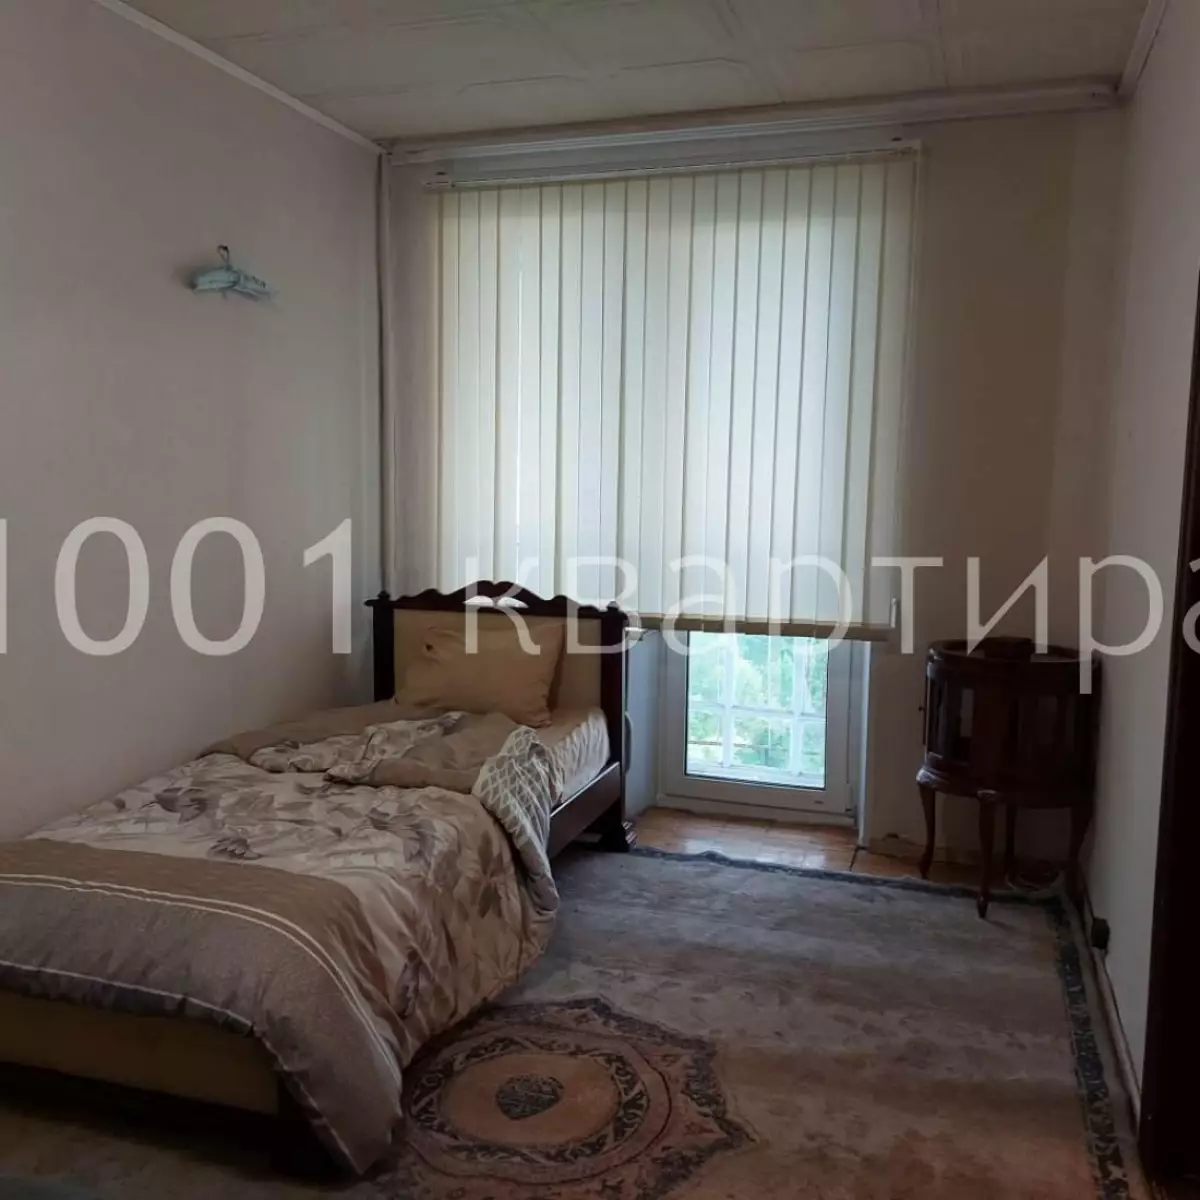 Вариант #136720 для аренды посуточно в Москве Федора Полетаева, д.21 к1 на 5 гостей - фото 2